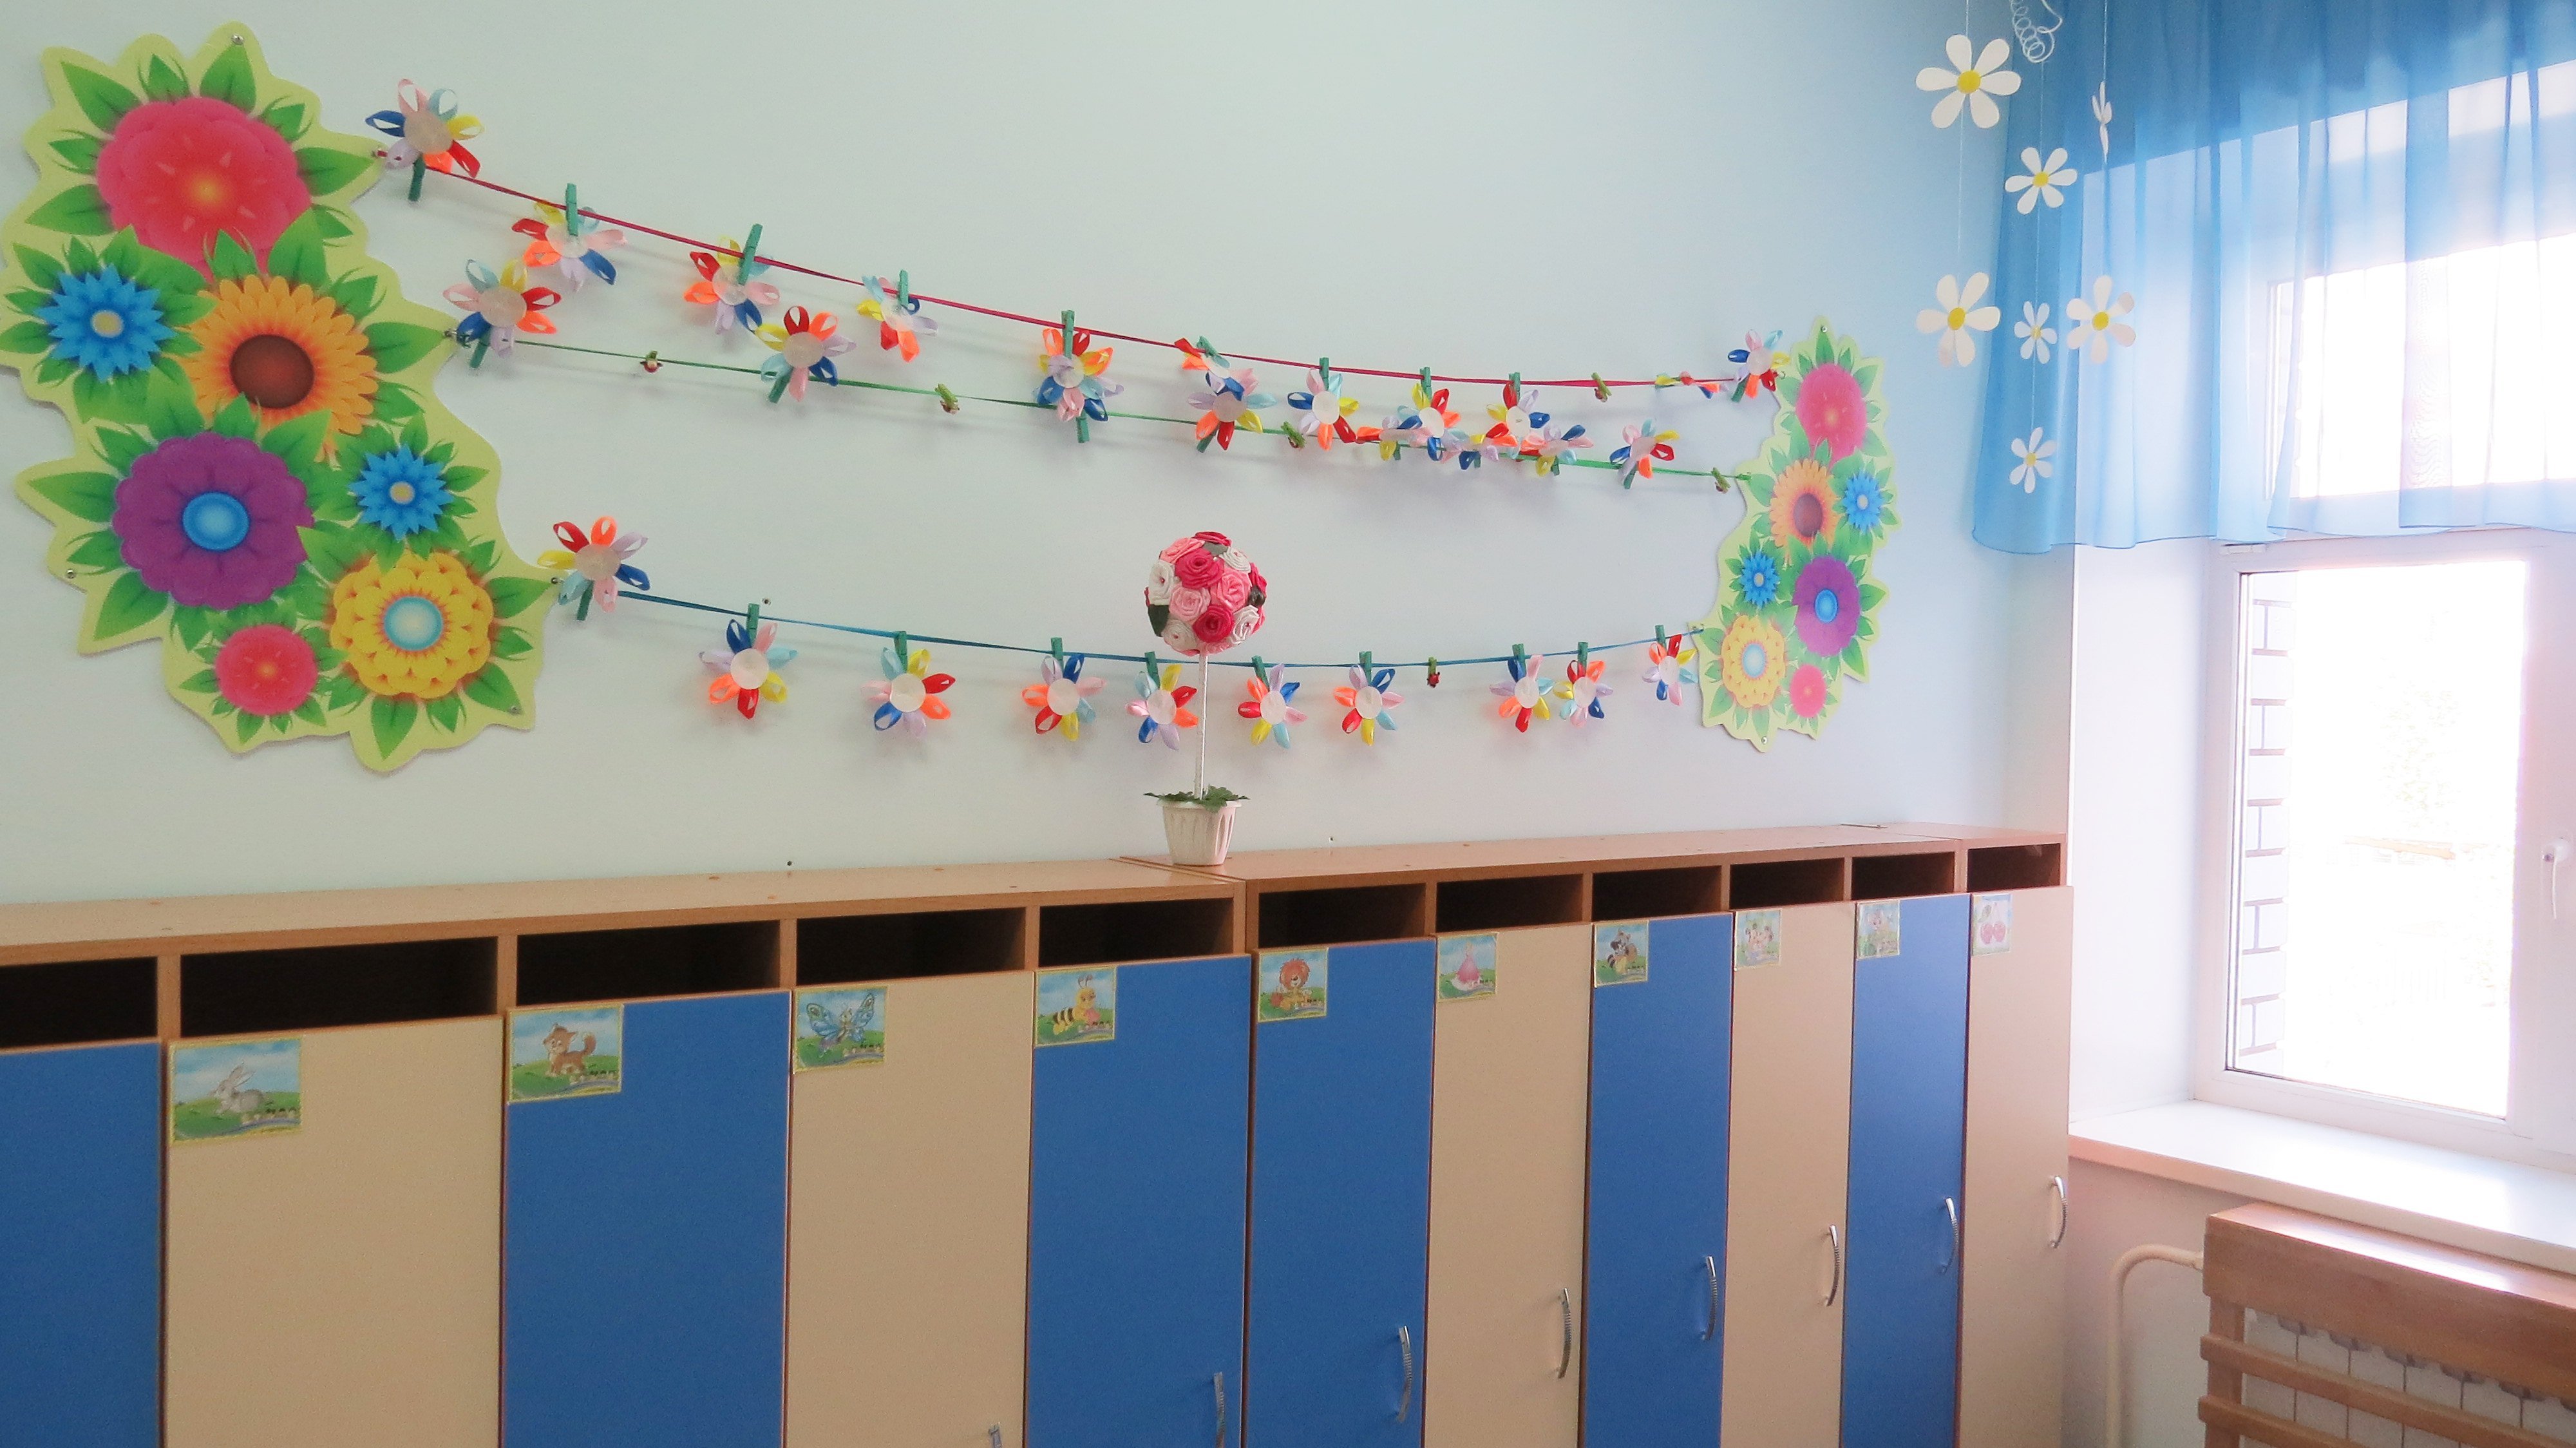 Цветы для оформления в уголок творчества в детском саду